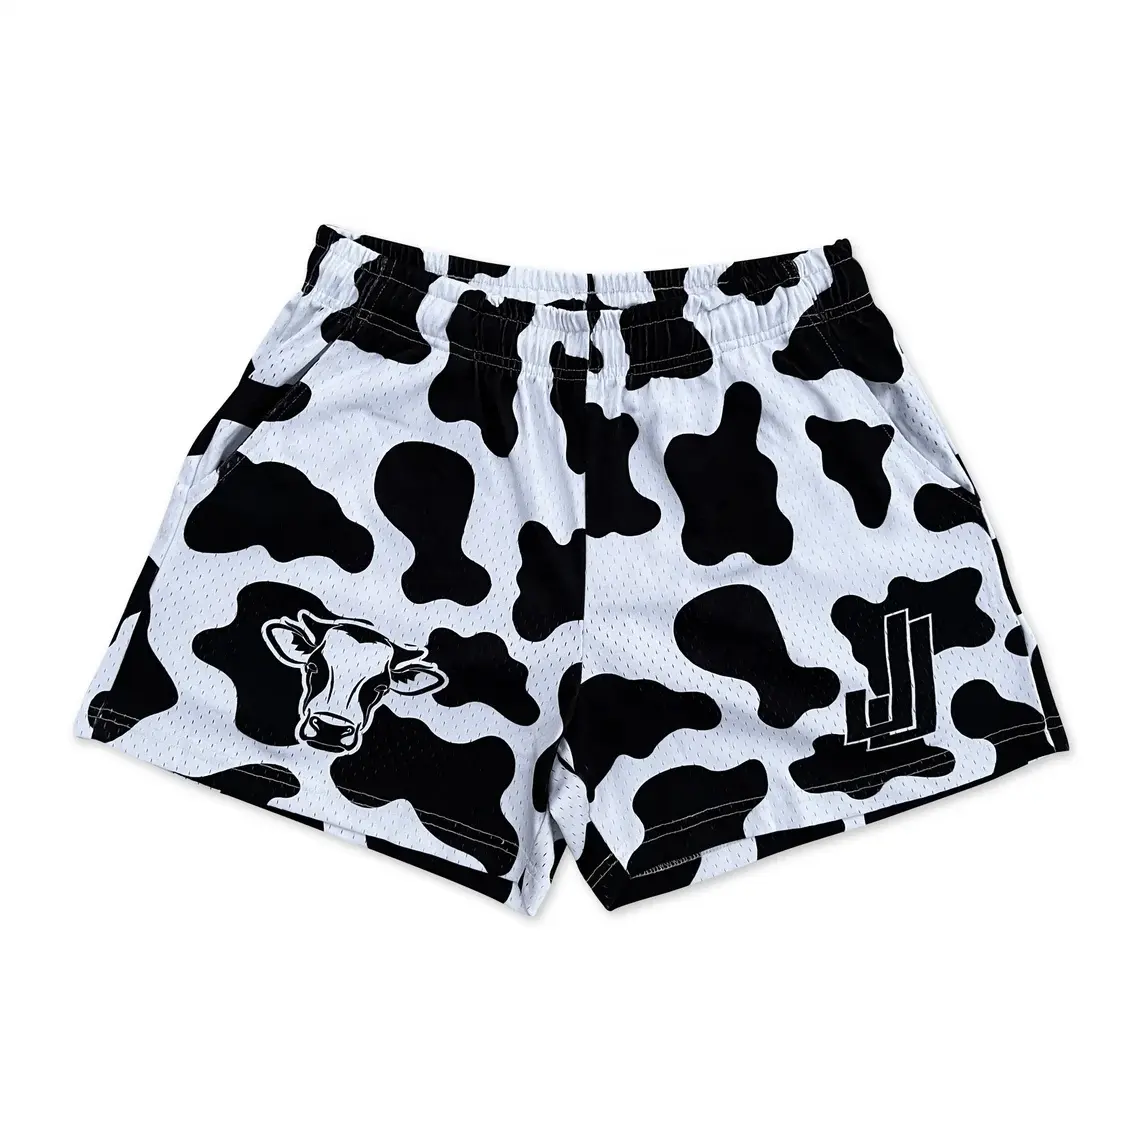 Pantalones cortos de baloncesto de malla, diseño de sublimación de vaca, blanco y negro